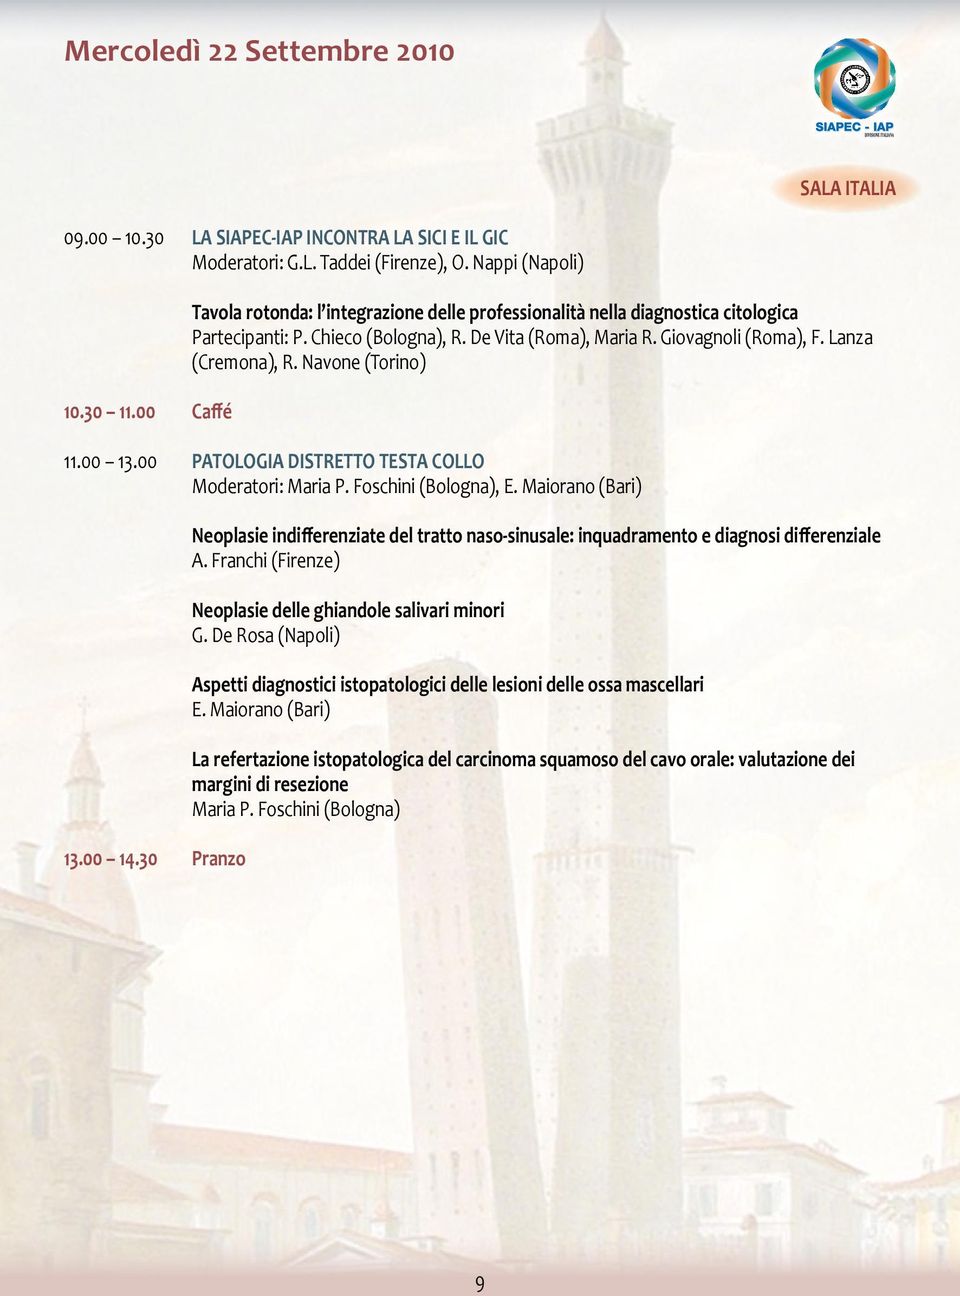 Lanza (Cremona), R. Navone (Torino) 11.00 13.00 PATOLOGIA DISTRETTO TESTA COLLO Moderatori: Maria P. Foschini (Bologna), E. Maiorano (Bari) 13.00 14.